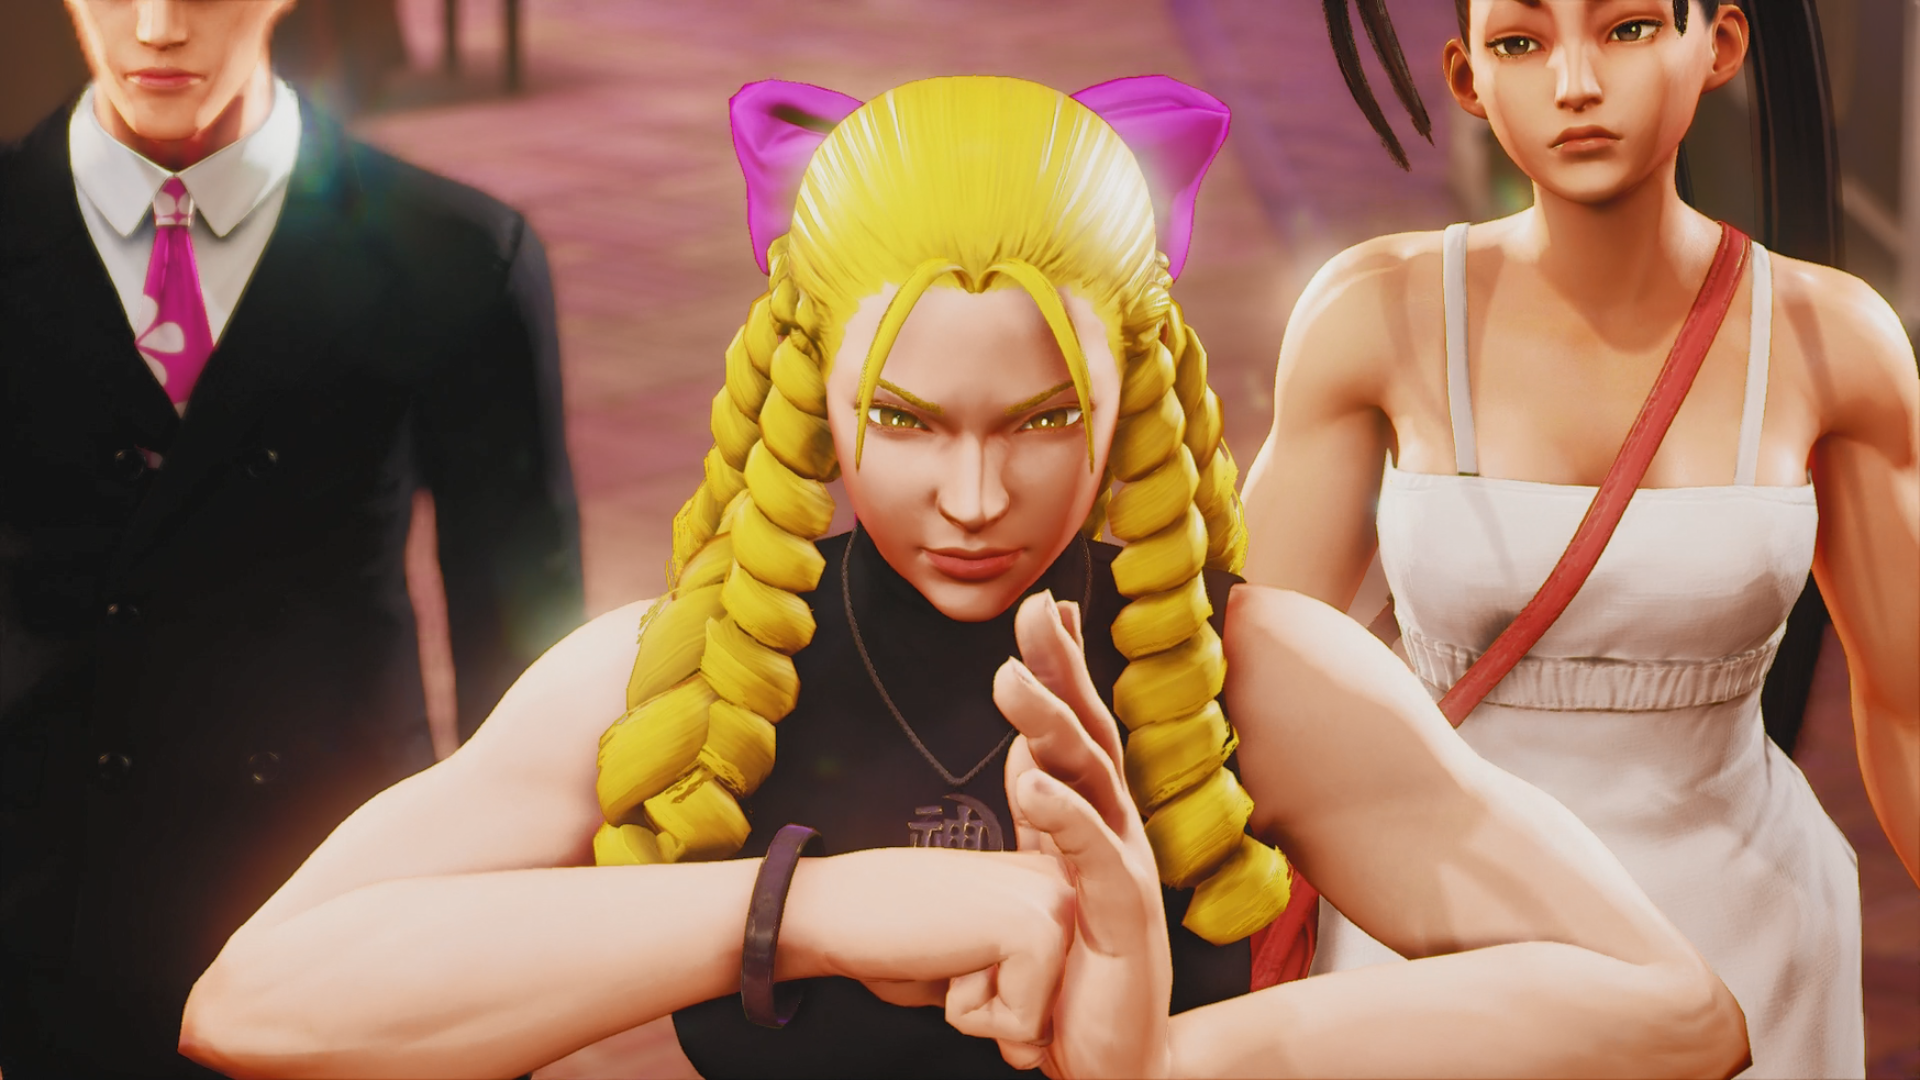 Karin  Street Fighter V: Champion Edition